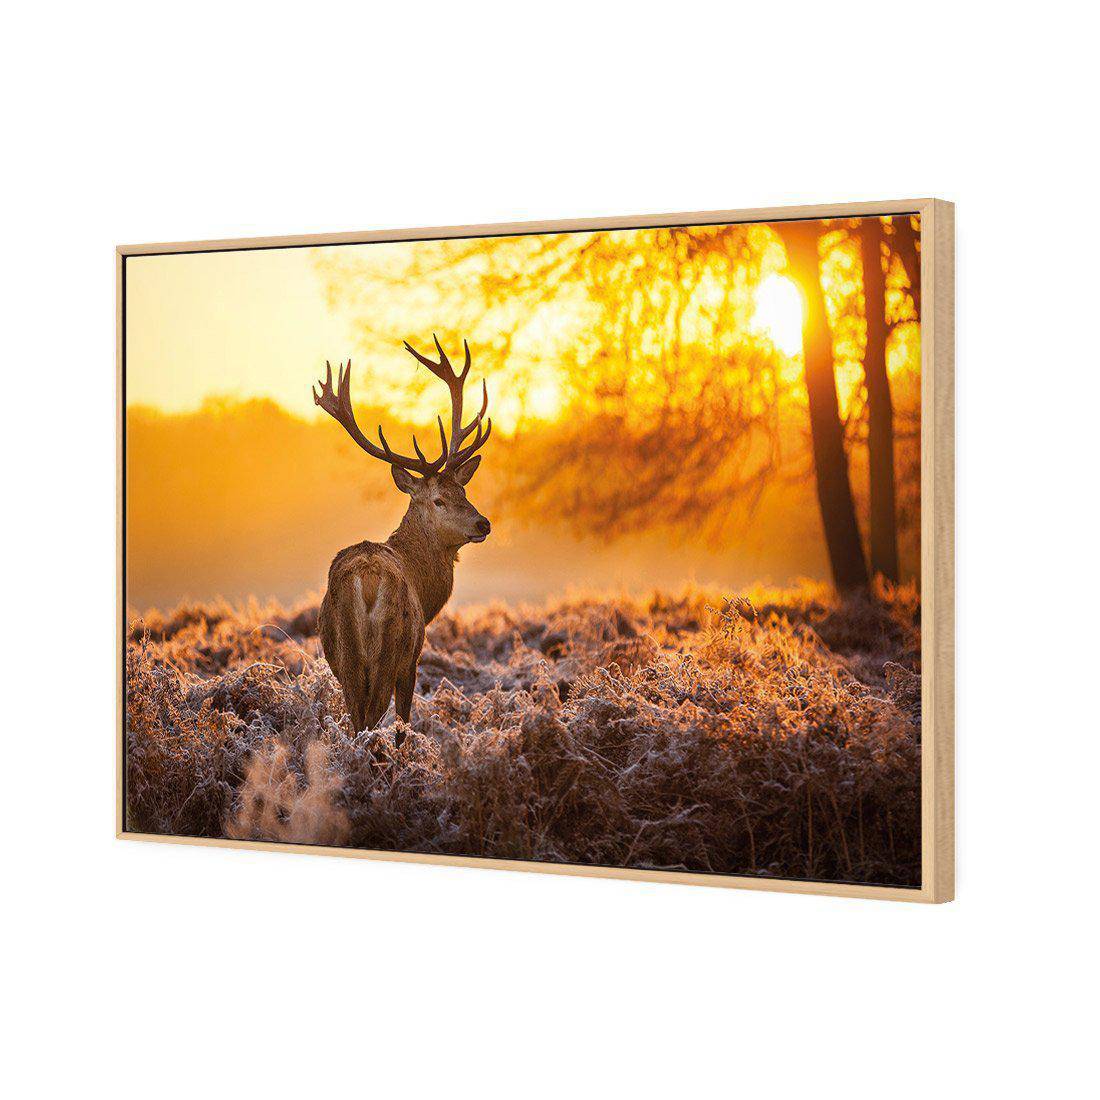 Sunset Deer Returns Canvas Art-Canvas-Wall Art Designs-45x30cm-Canvas - Oak Frame-Wall Art Designs